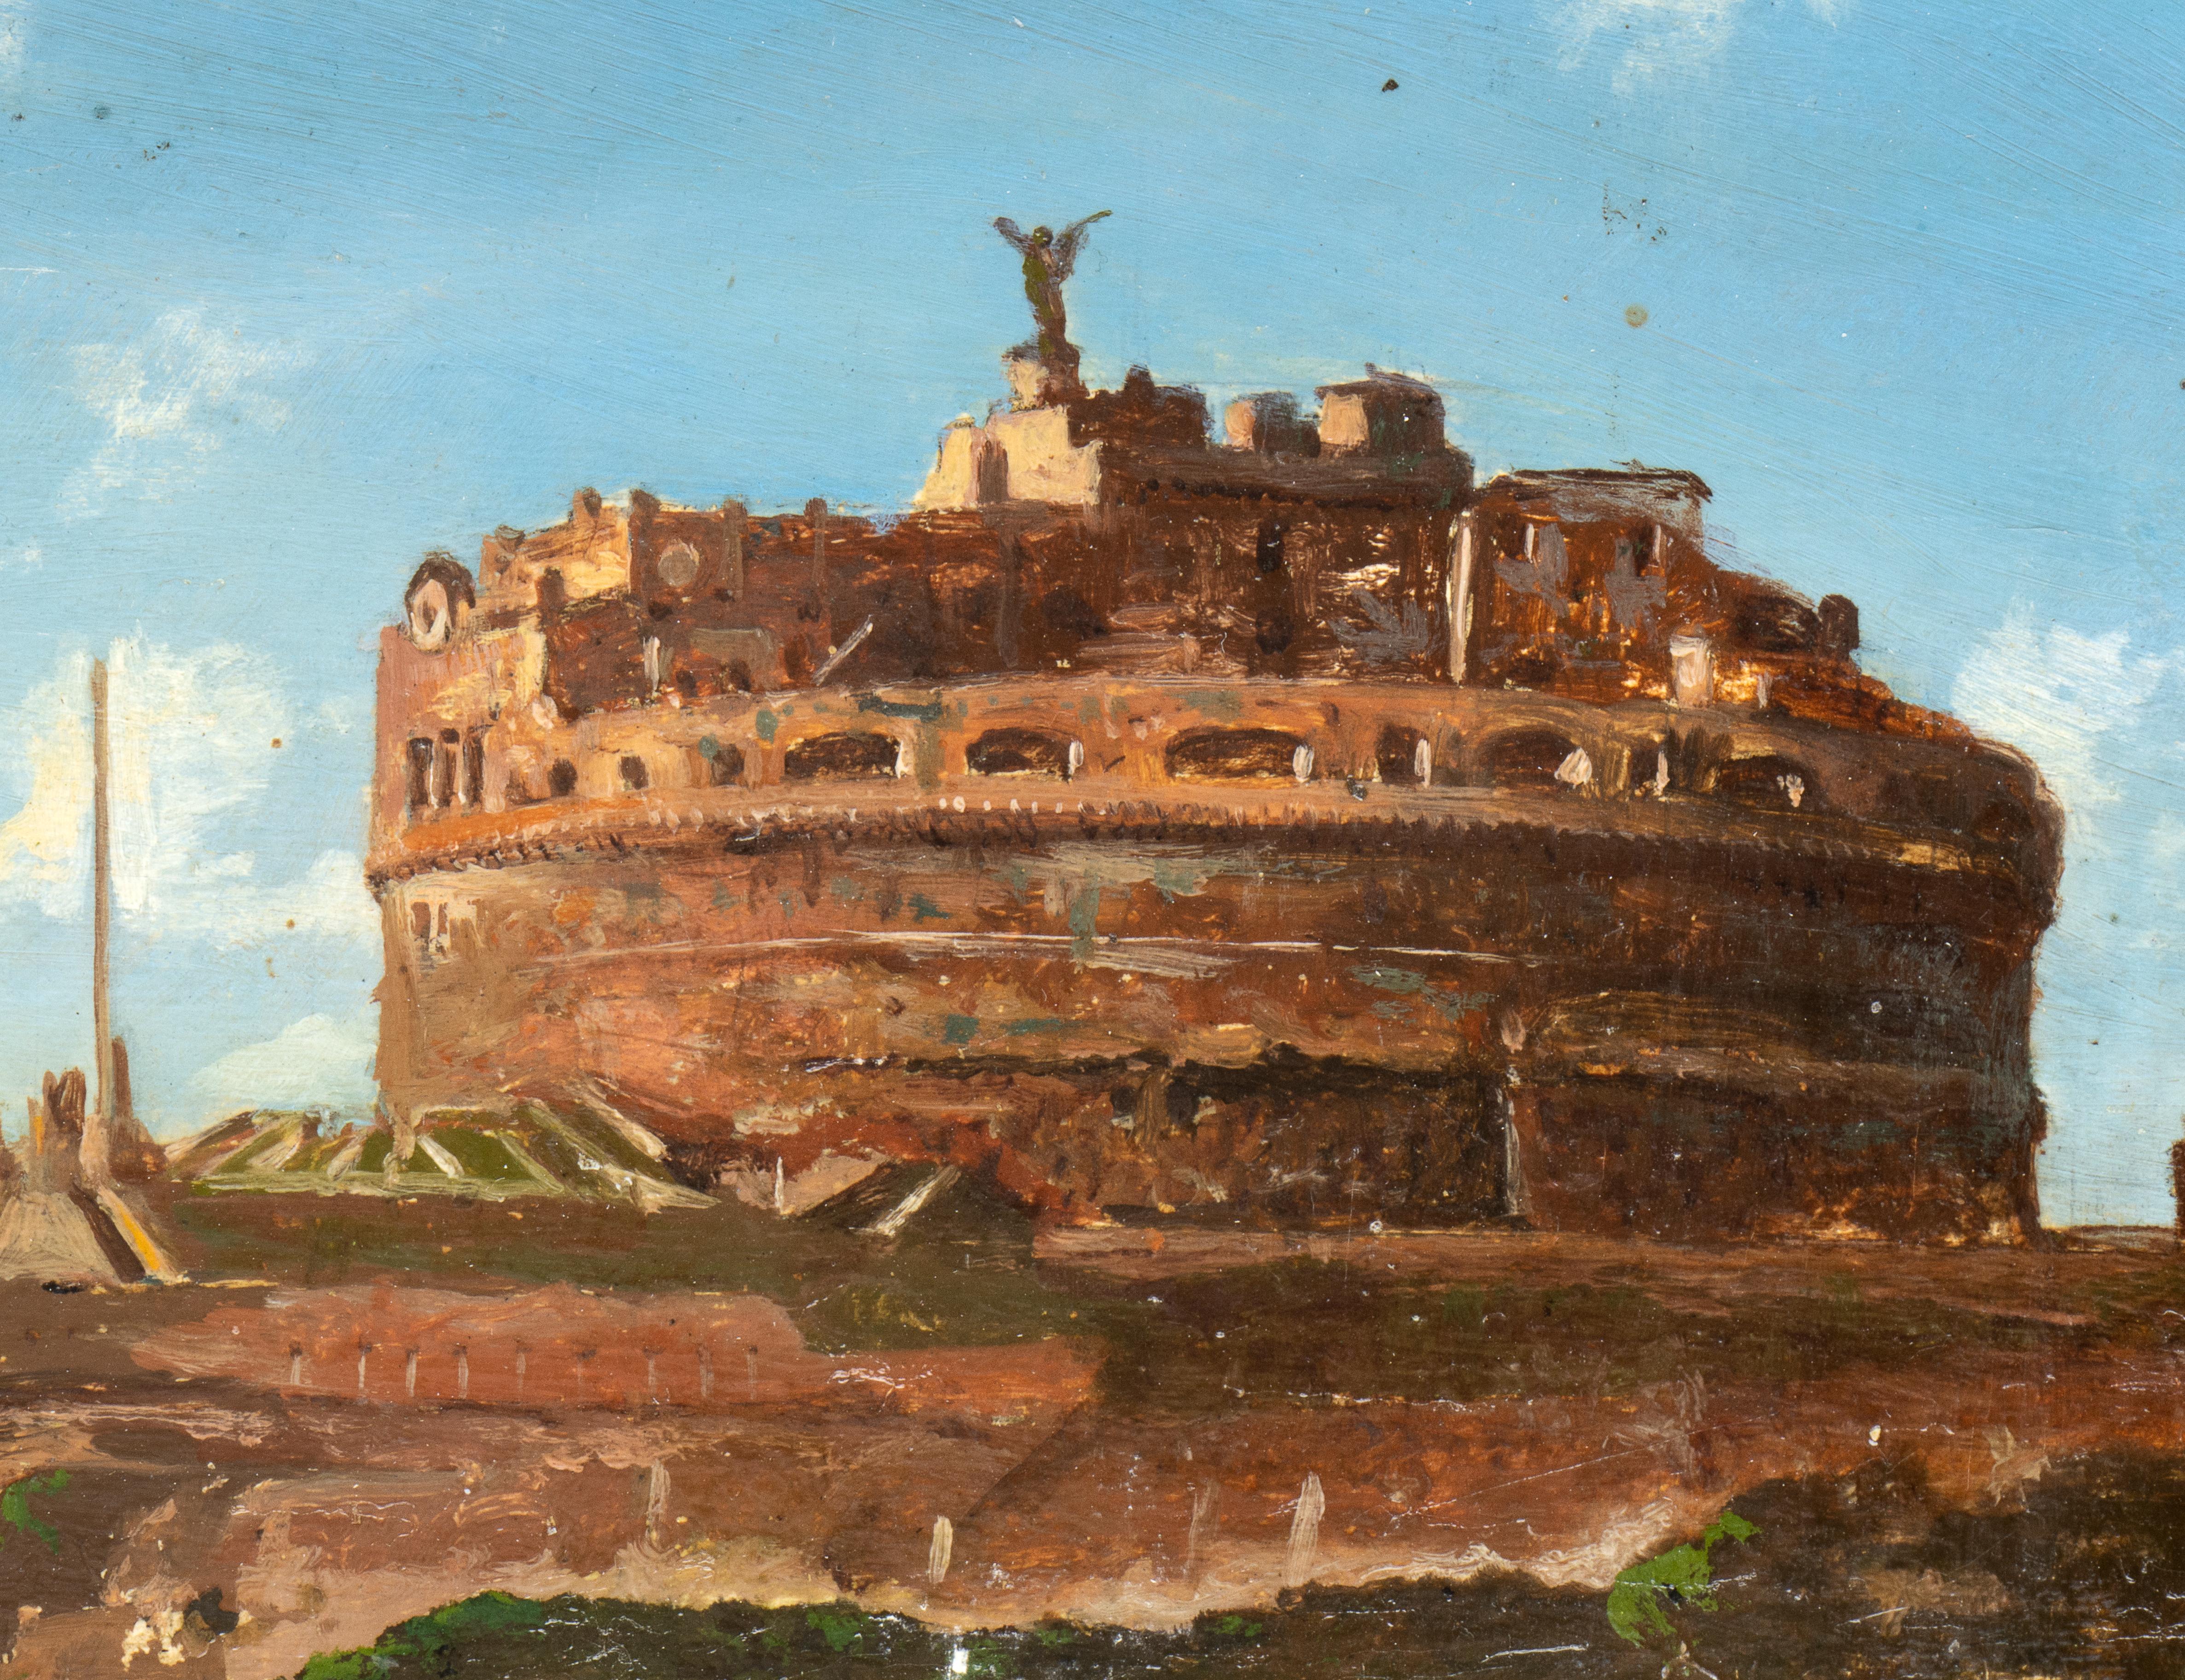 Aufwändig gerahmt, isoliert in schwarzen modernen Rahmen, ist dieses Gemälde  stellen eine typisch alltägliche Szene Roms am Ende des 19. Jahrhunderts in perfektem Grand-Tour-Stil dar: den Blick vom Tiberufer mit Fischern und Booten,  Engelsburg mit